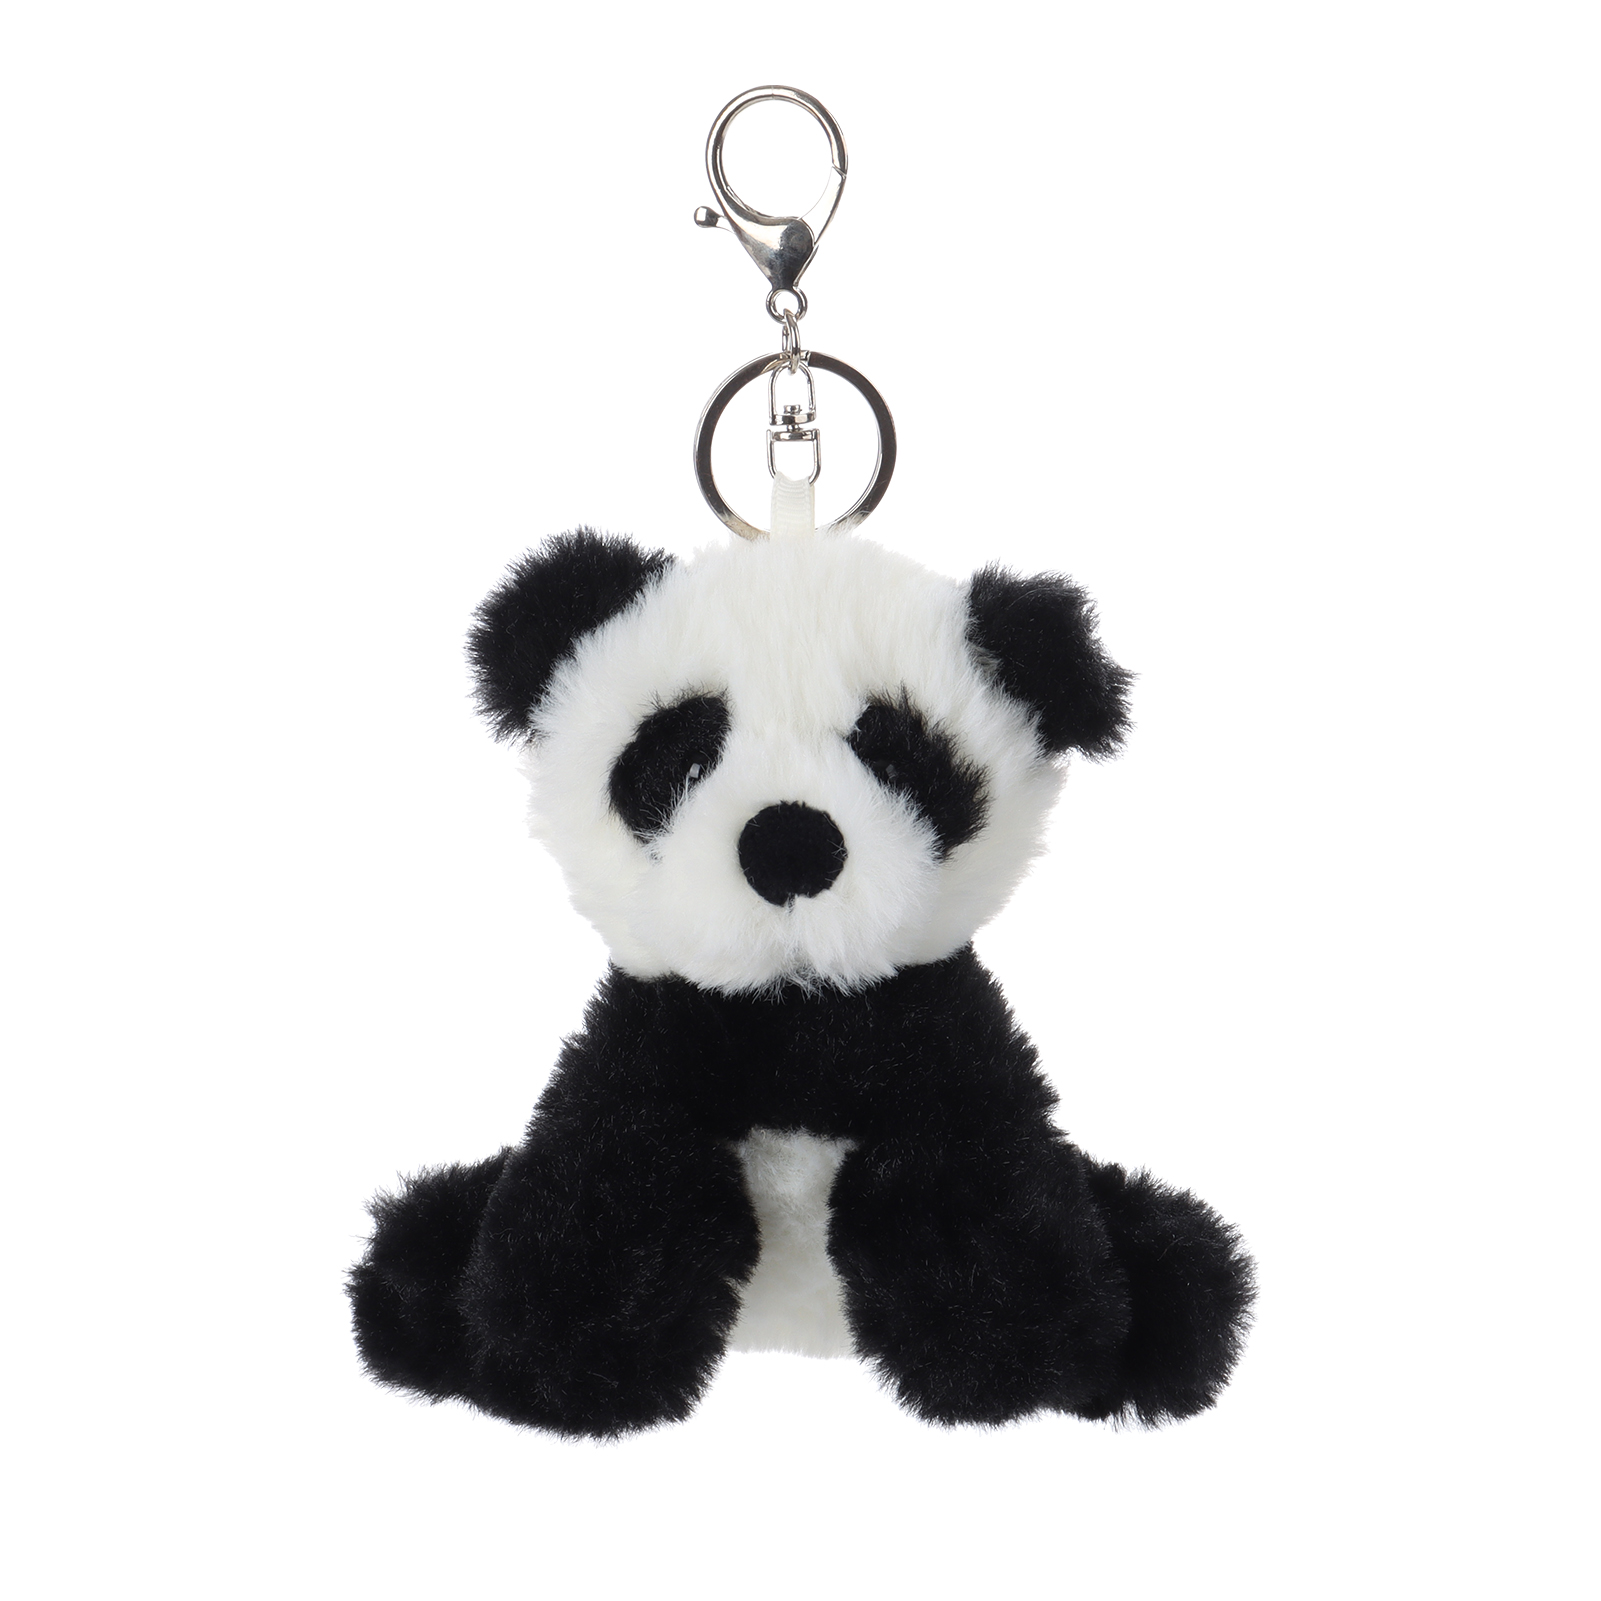 Apricot Lamb Key- Vid Panda Stuffed Animal Soft Plush Keychain